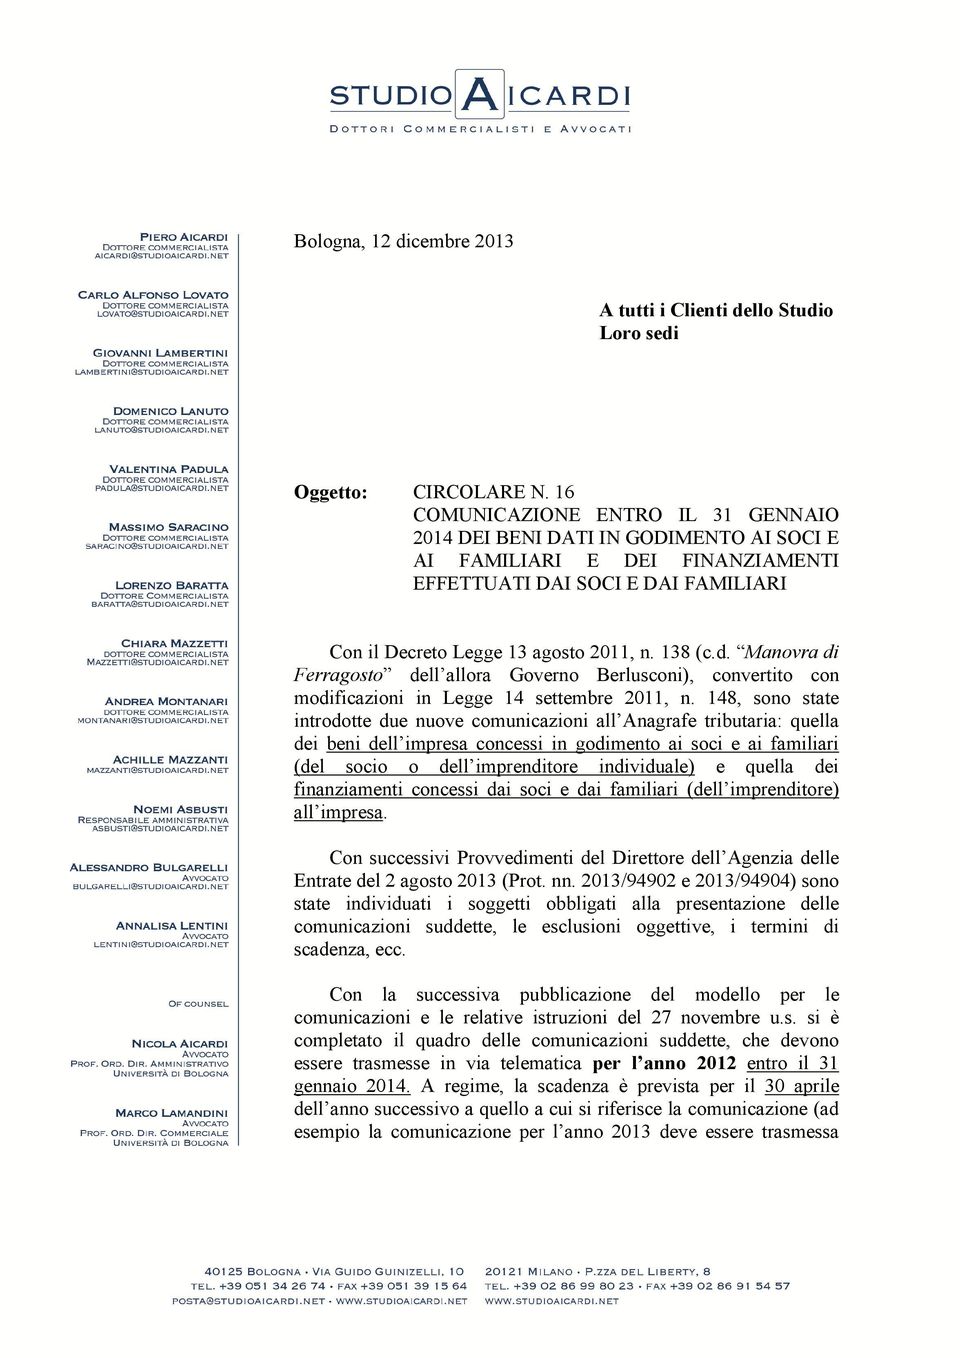 Manovra di Ferragosto dell allora Governo Berlusconi), convertito con modificazioni in Legge 14 settembre 2011, n.